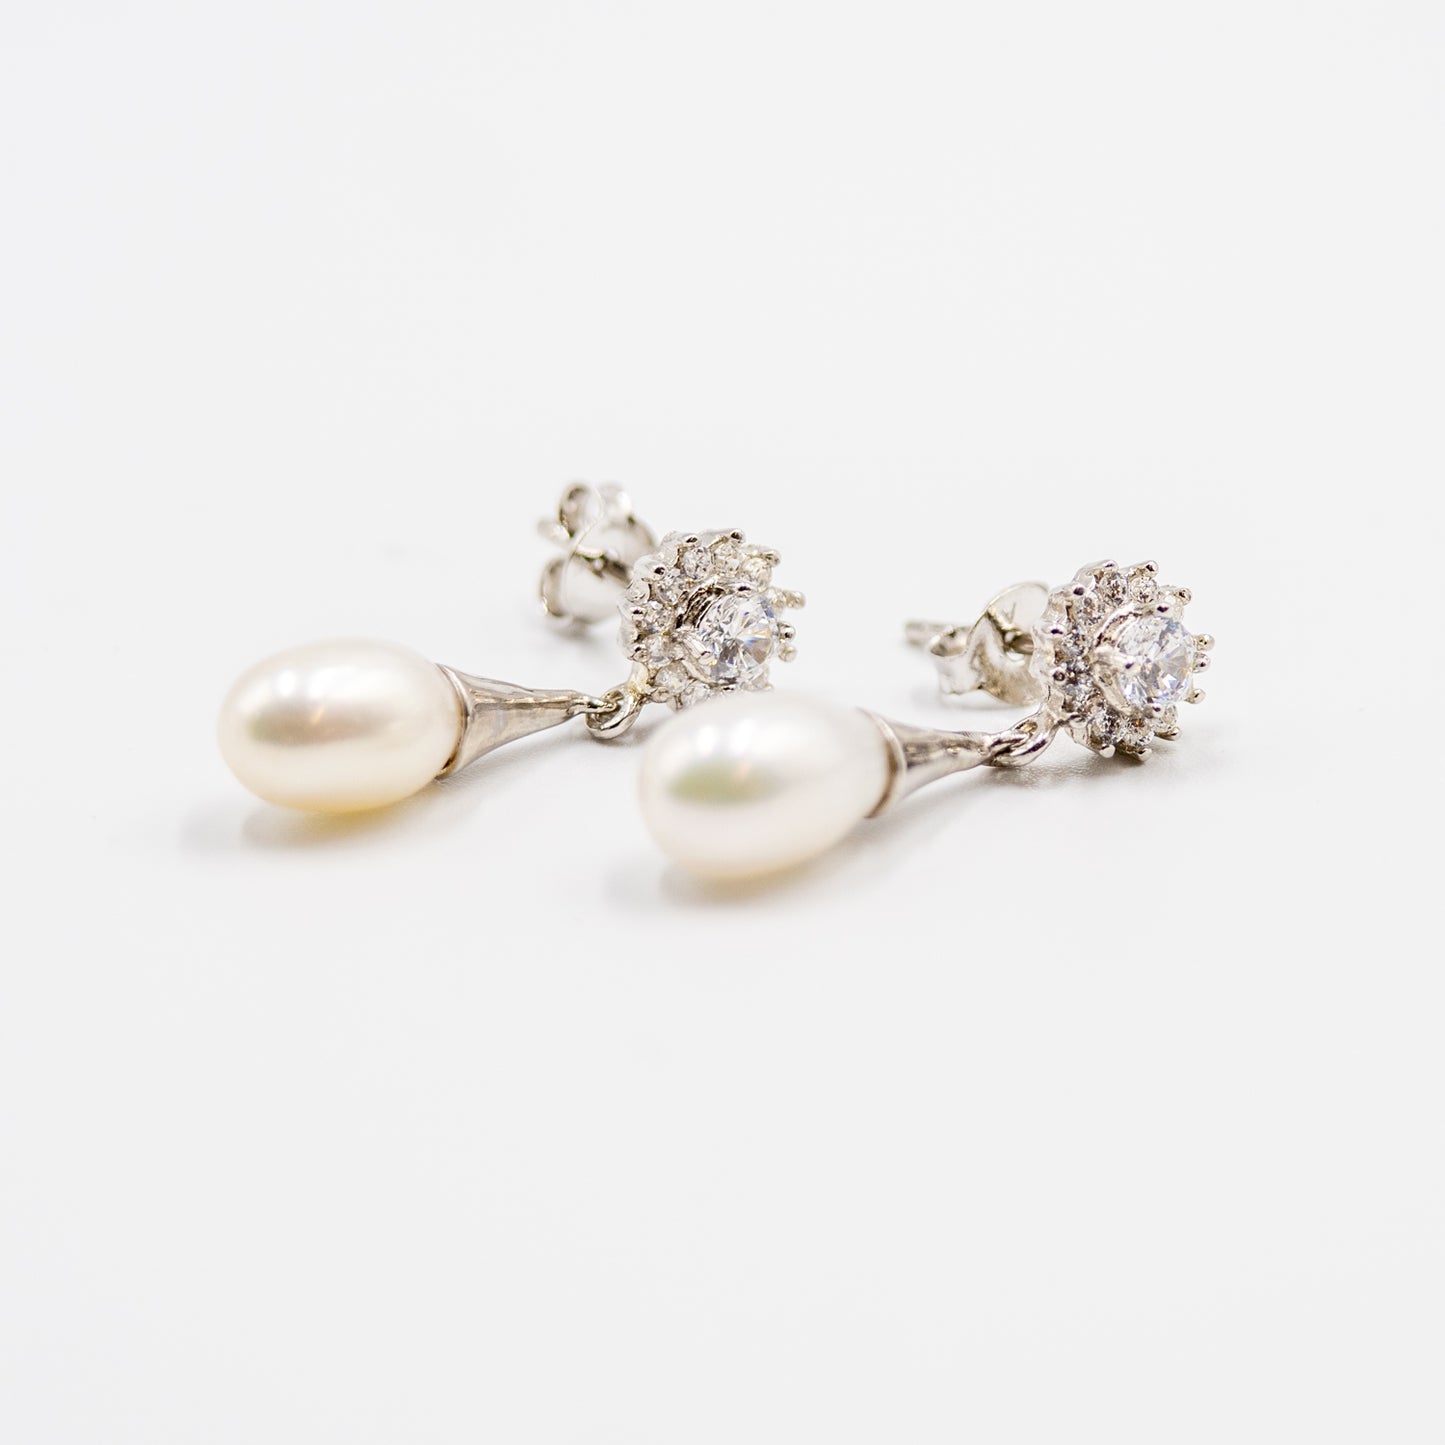 DK-925-173 sterling silver pending pearl earrings